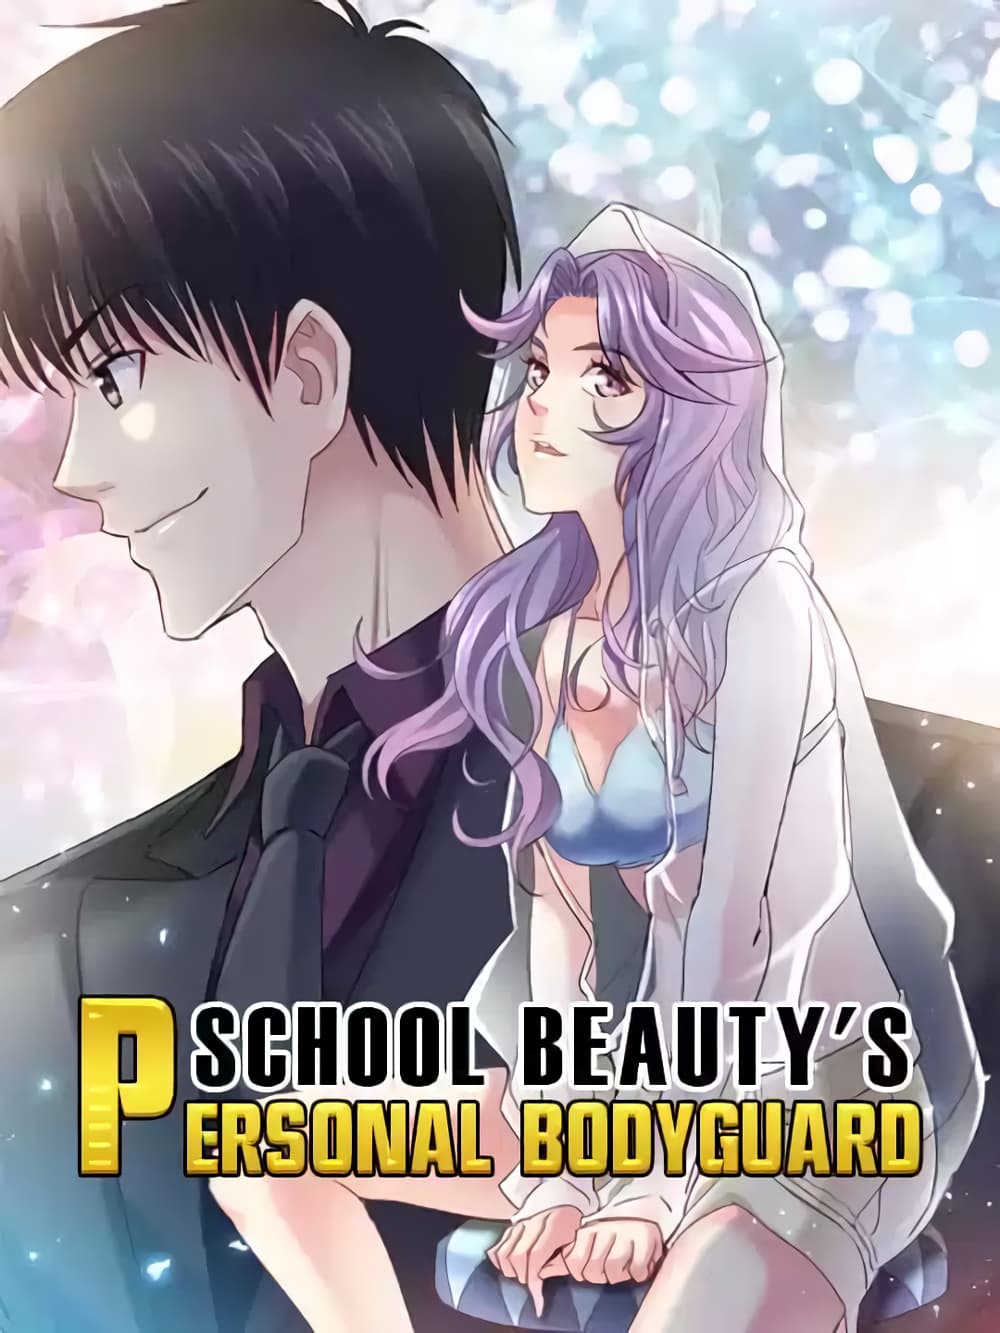 School Beauty's Bodyguard286 (1)